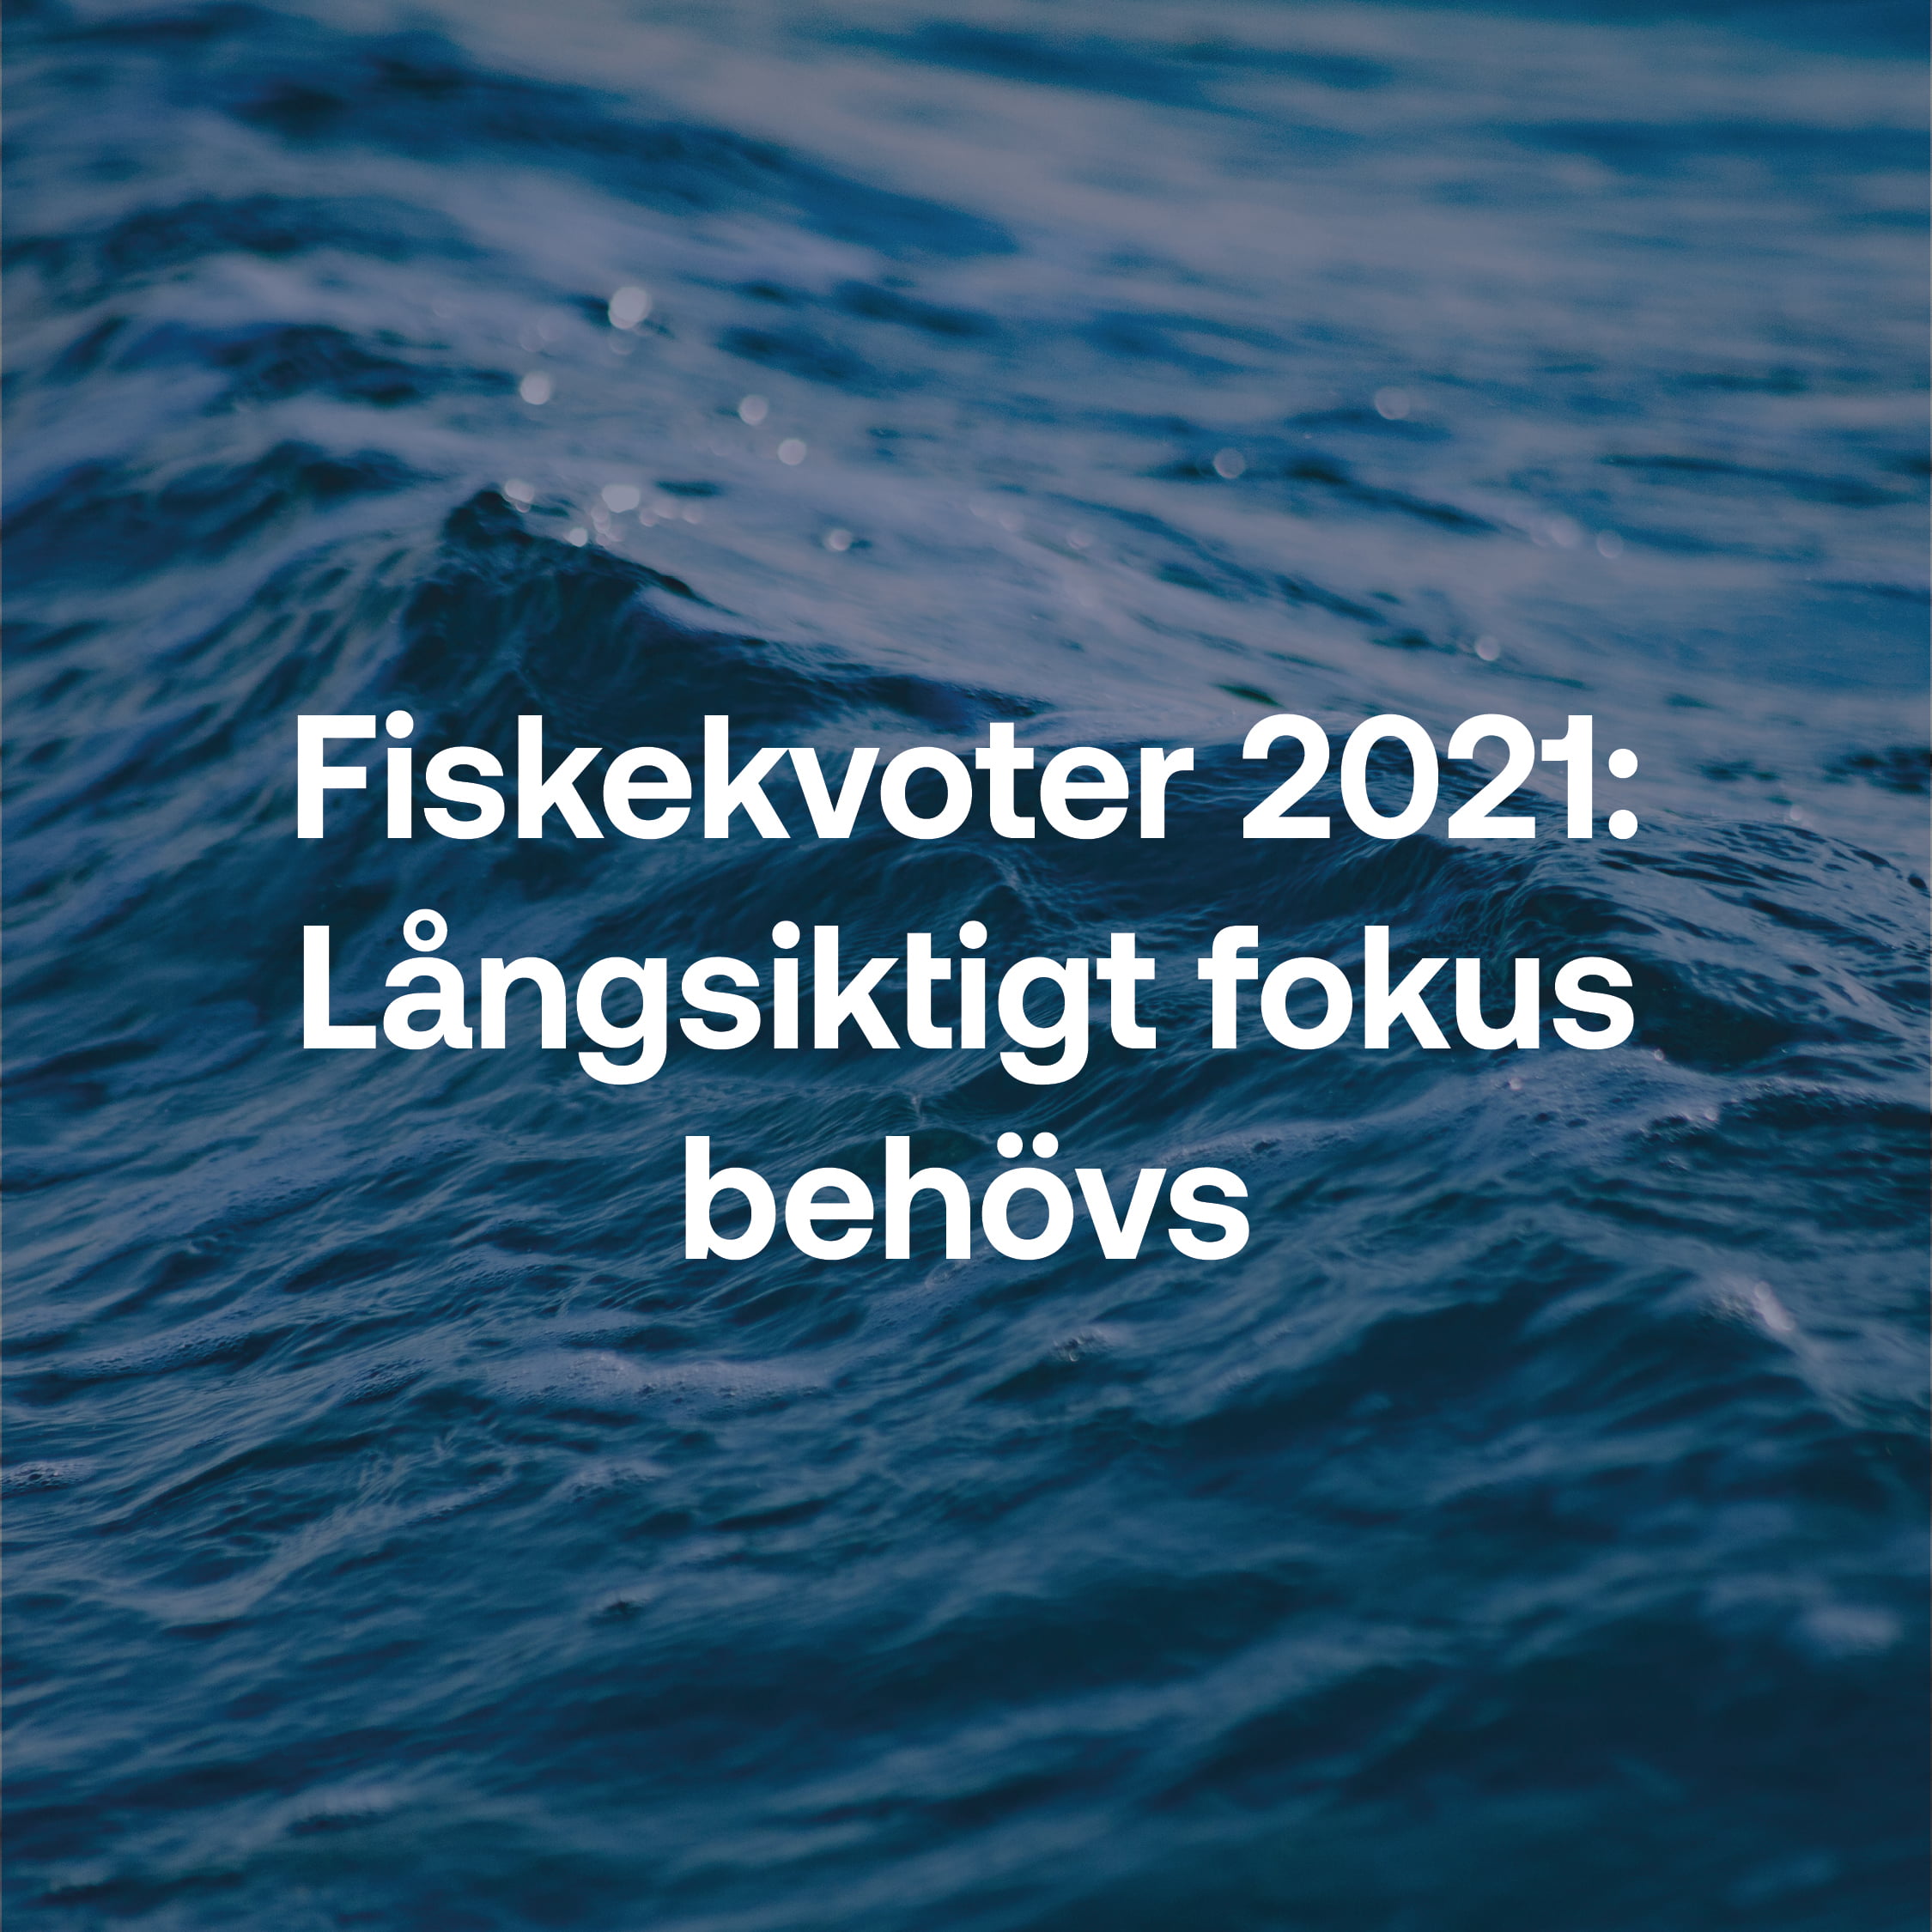 Fiskekvoter 2021: Långsiktigt fokus behövs.